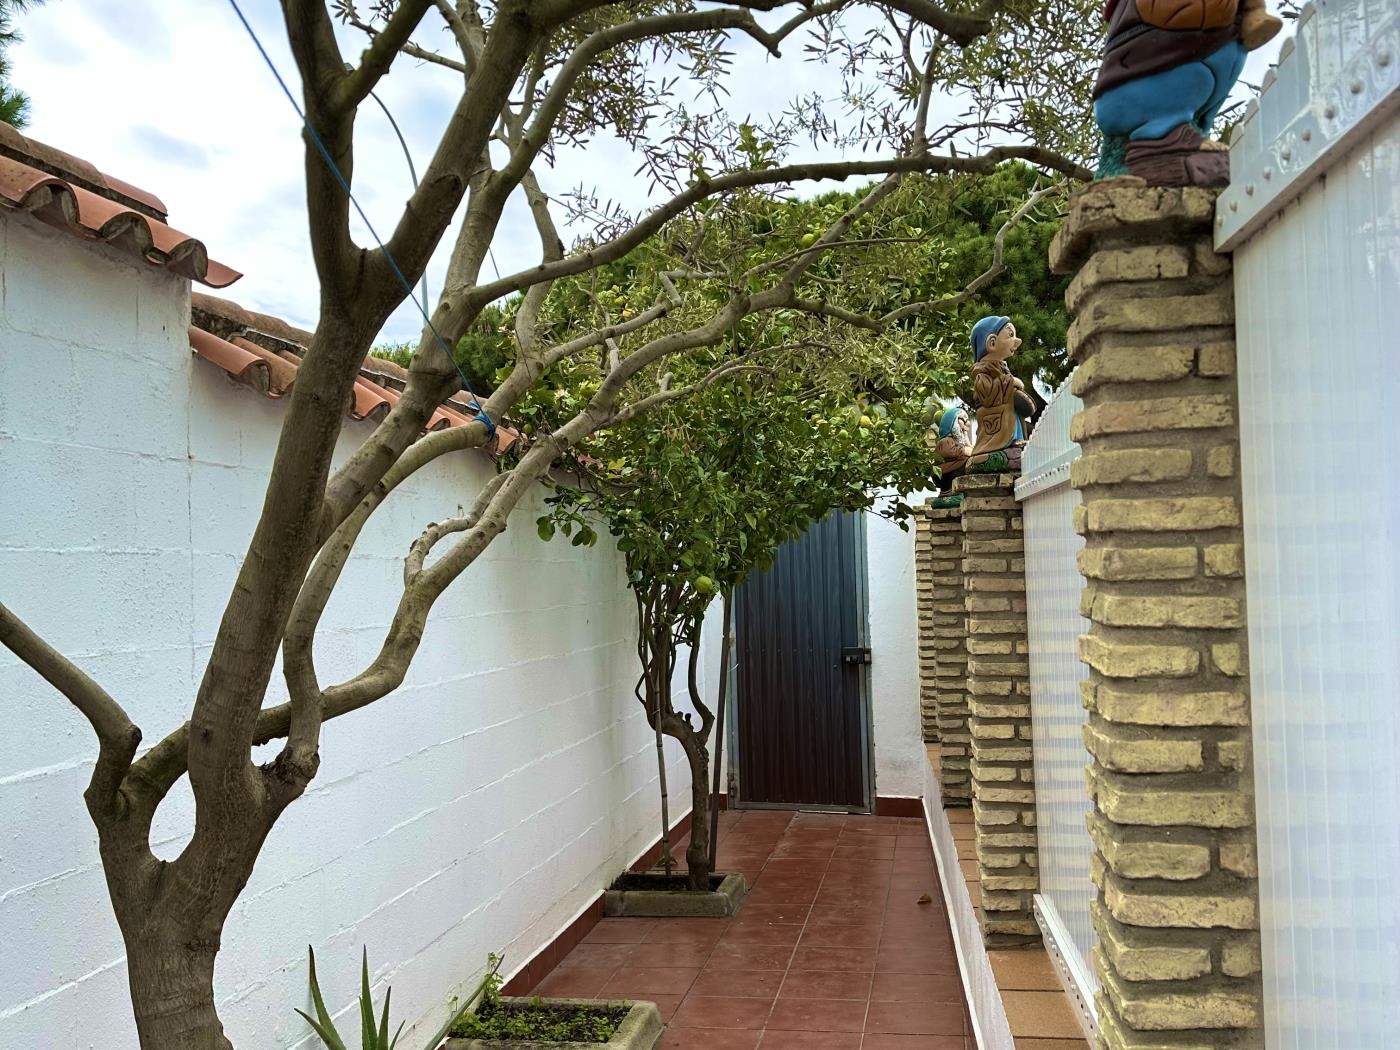 Ref 301. The Barrosa house in Chiclana de la frontera